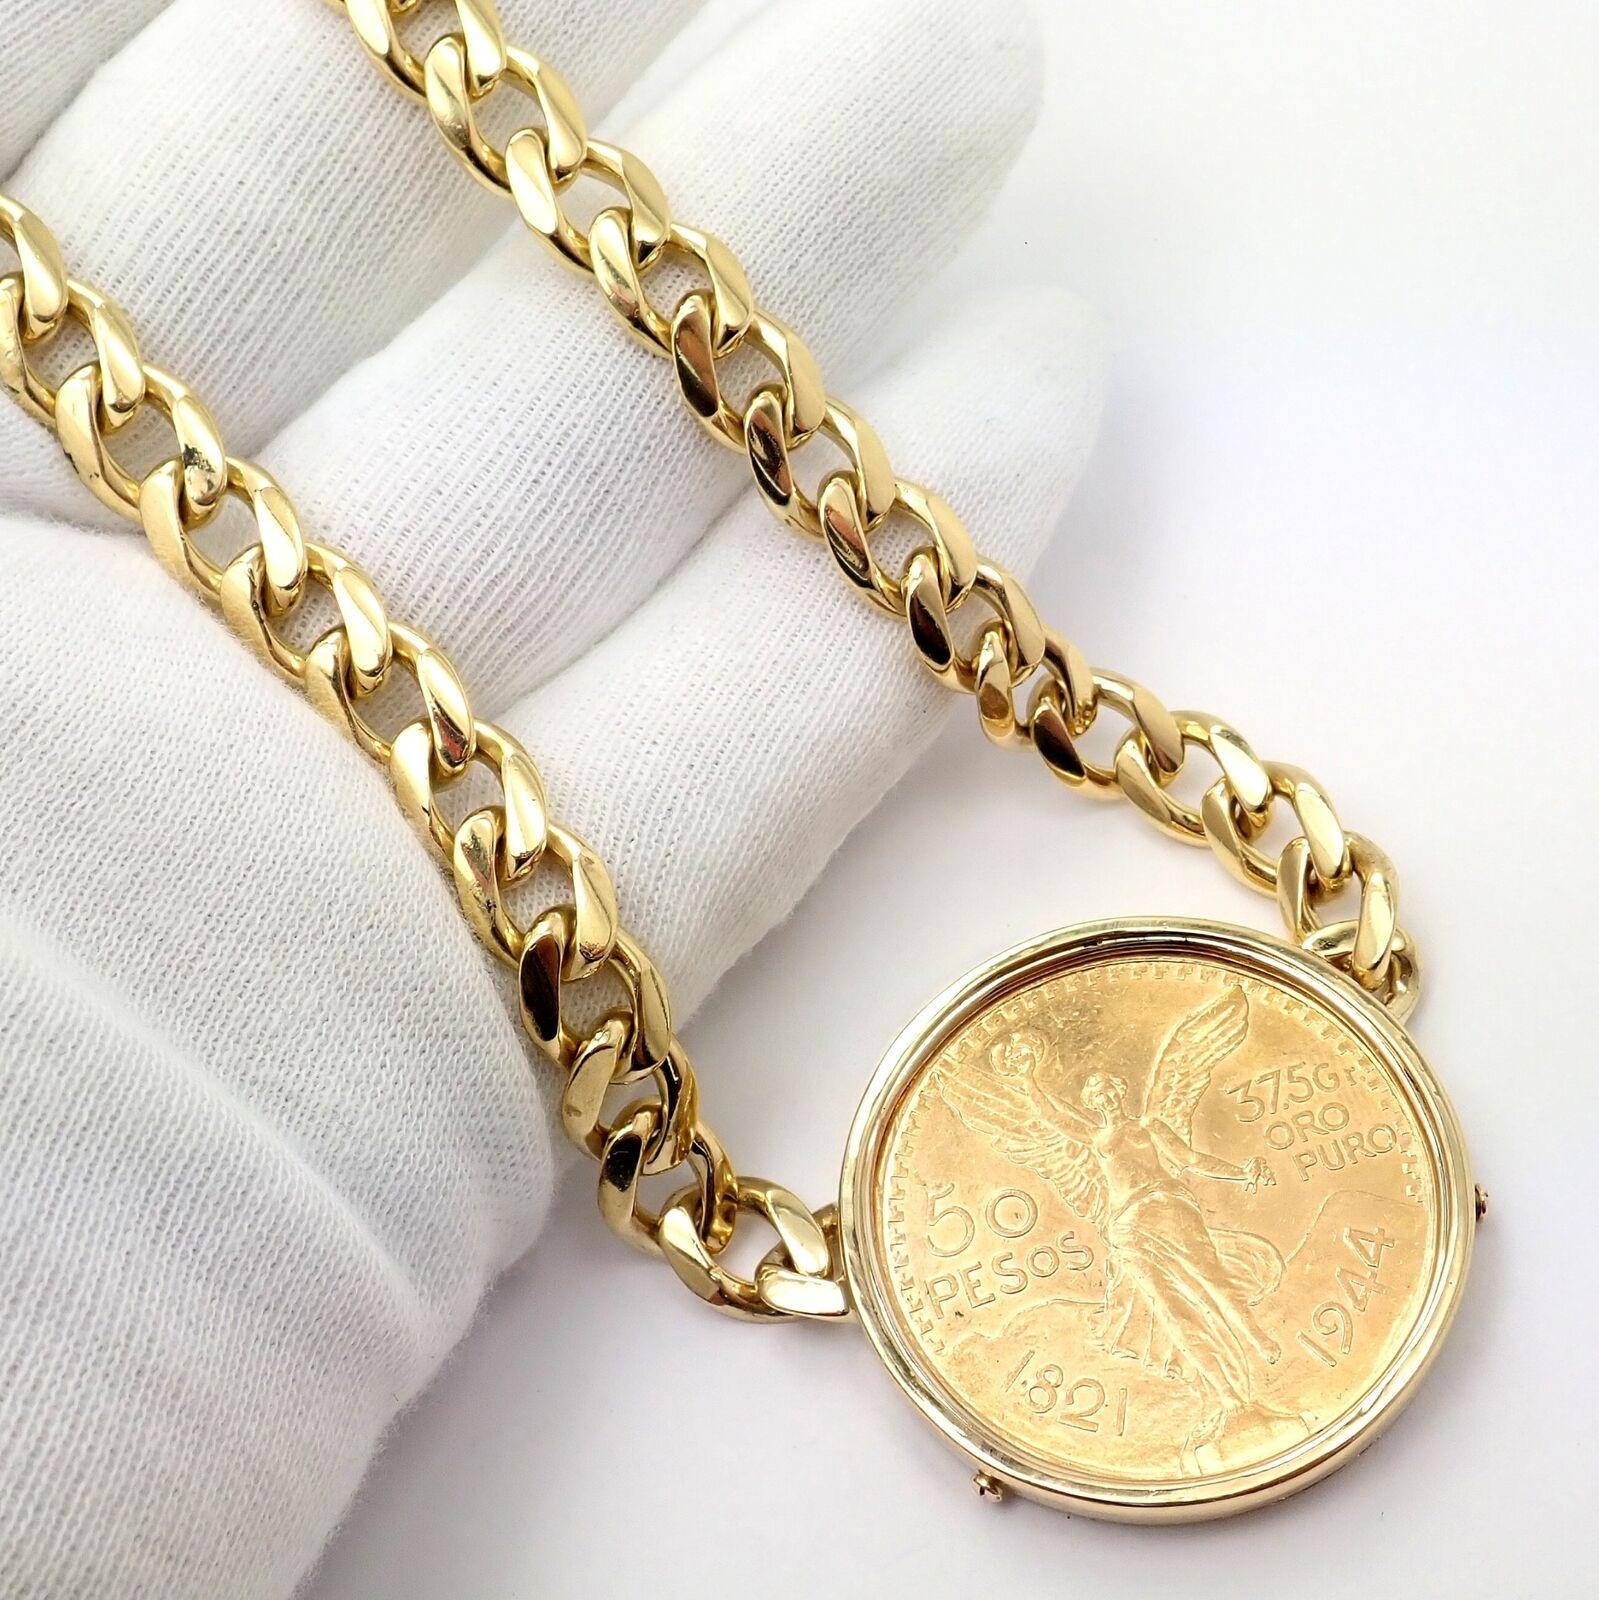 Bulgari Centenario 50 Pesos Coin Mexico Coin Monete Yellow Gold Necklace For Sale 1